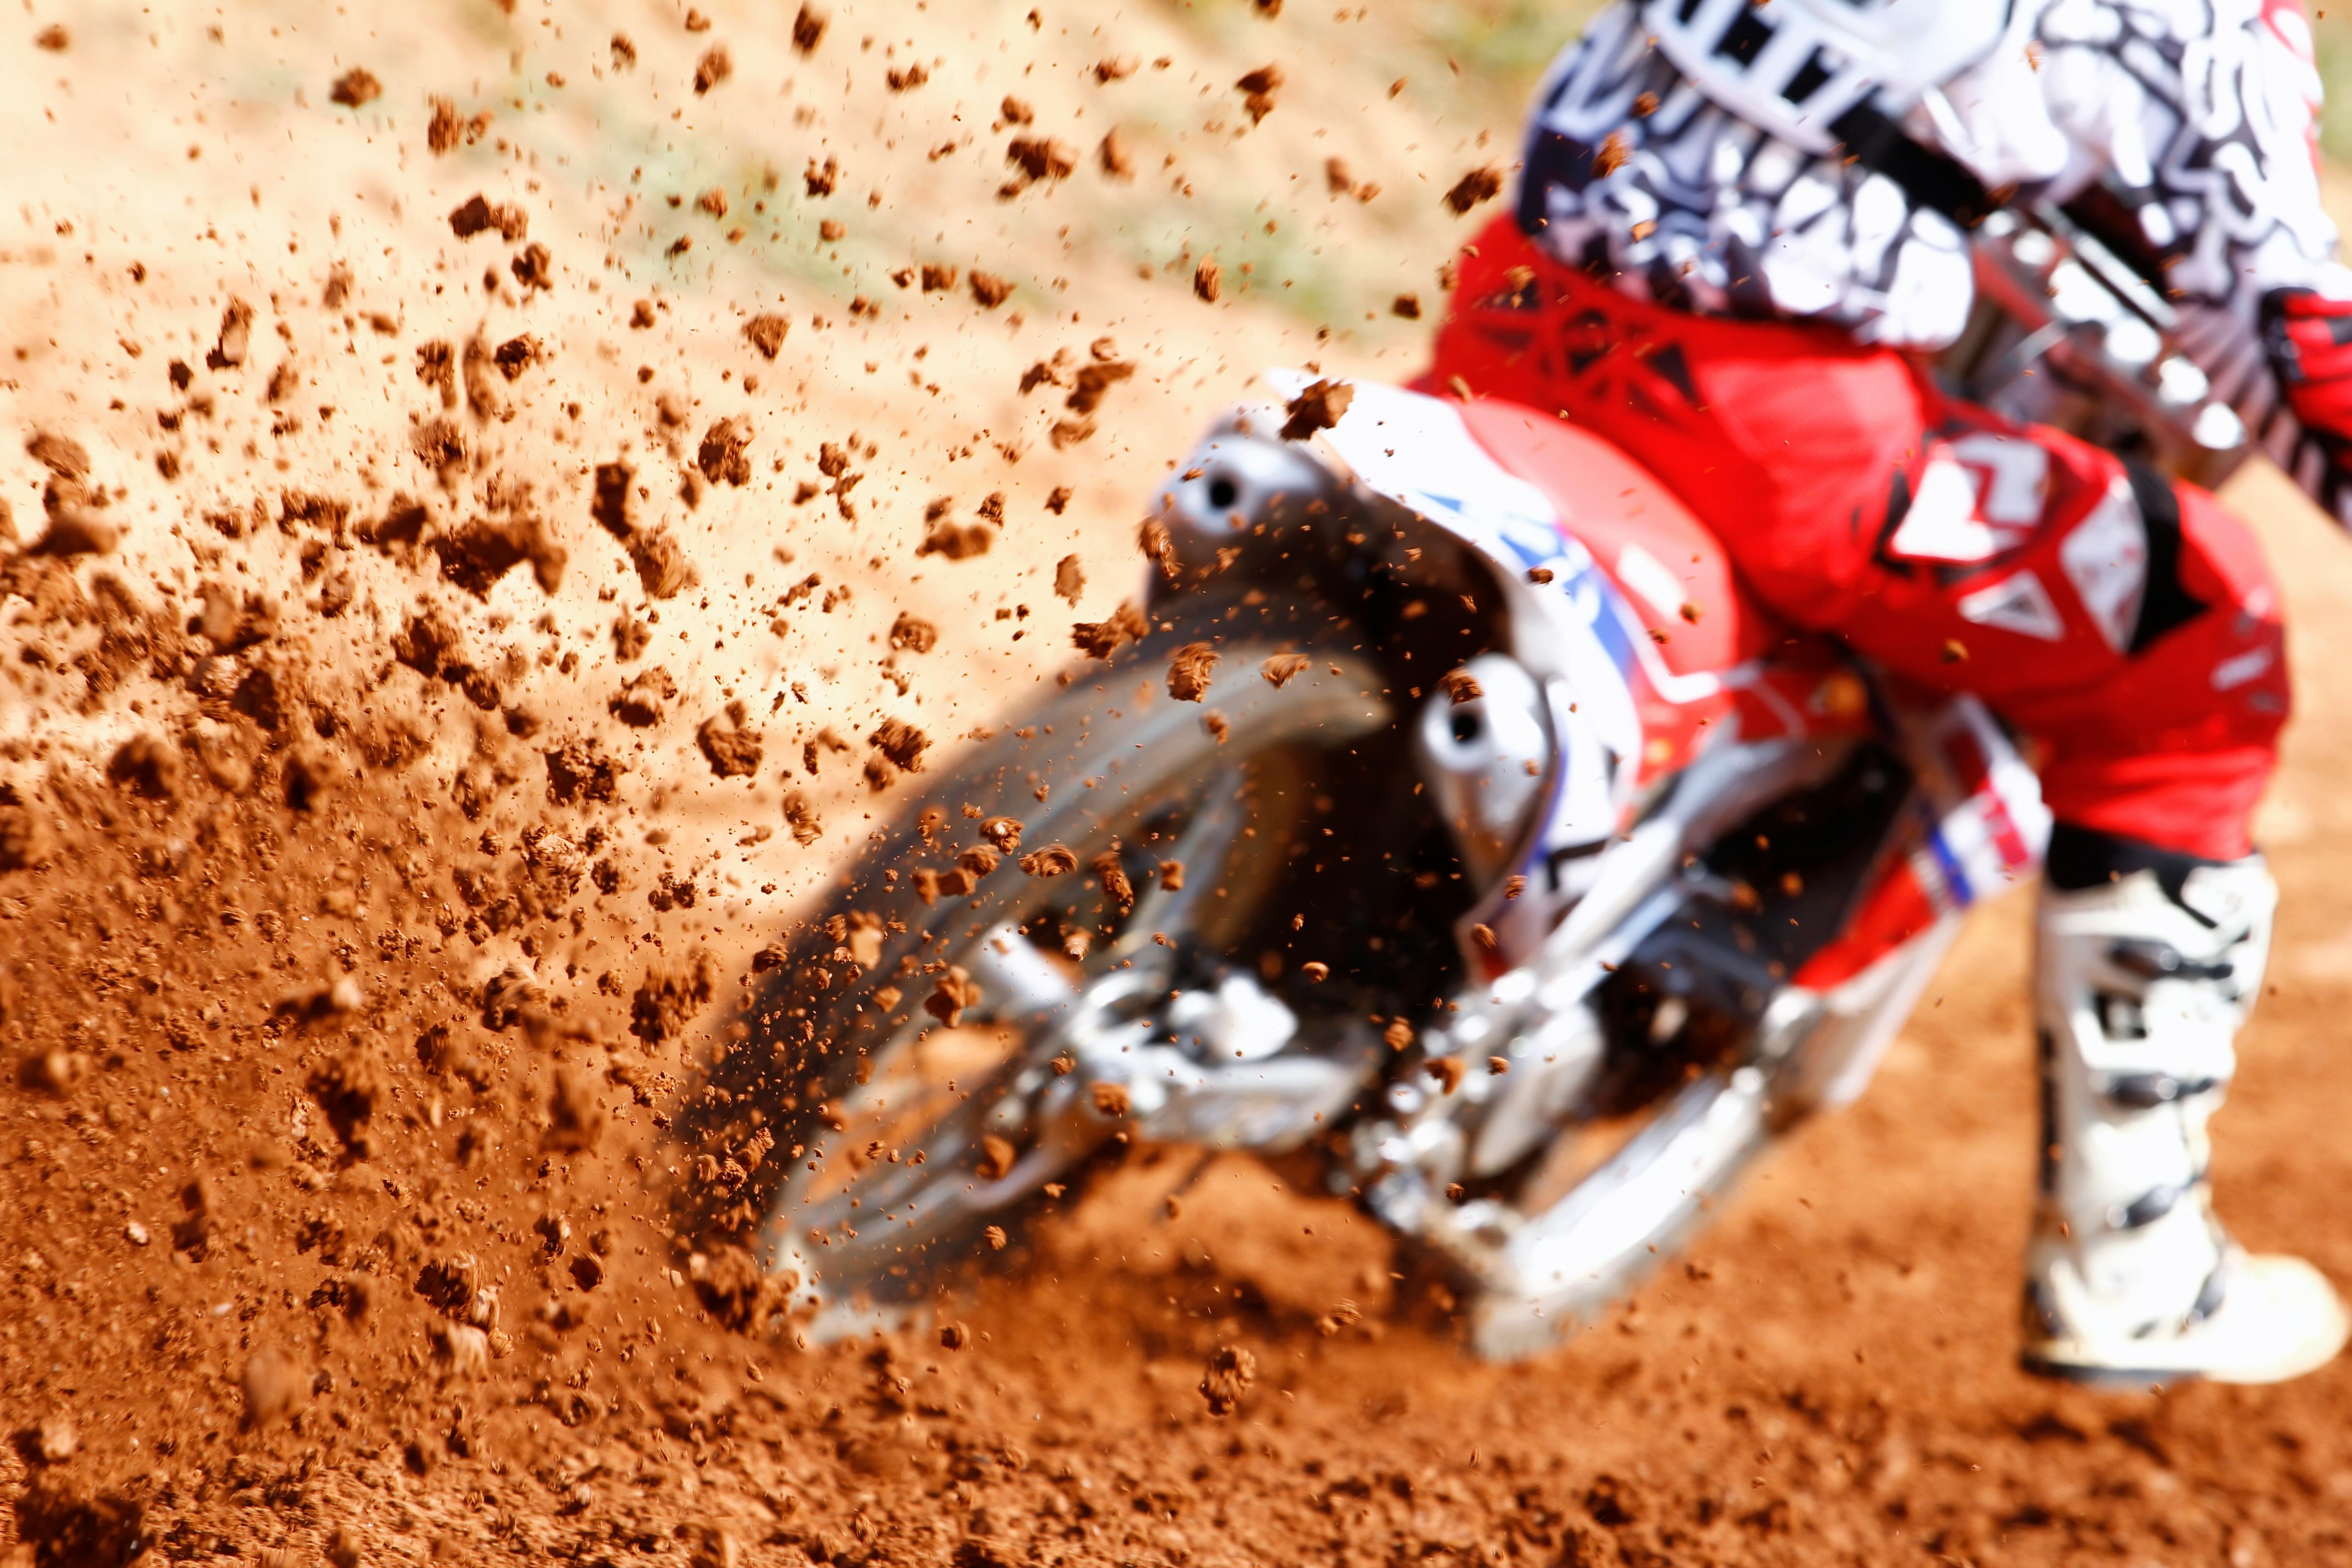 Fotos Corrida Motocross, 61.000+ fotos de arquivo grátis de alta qualidade